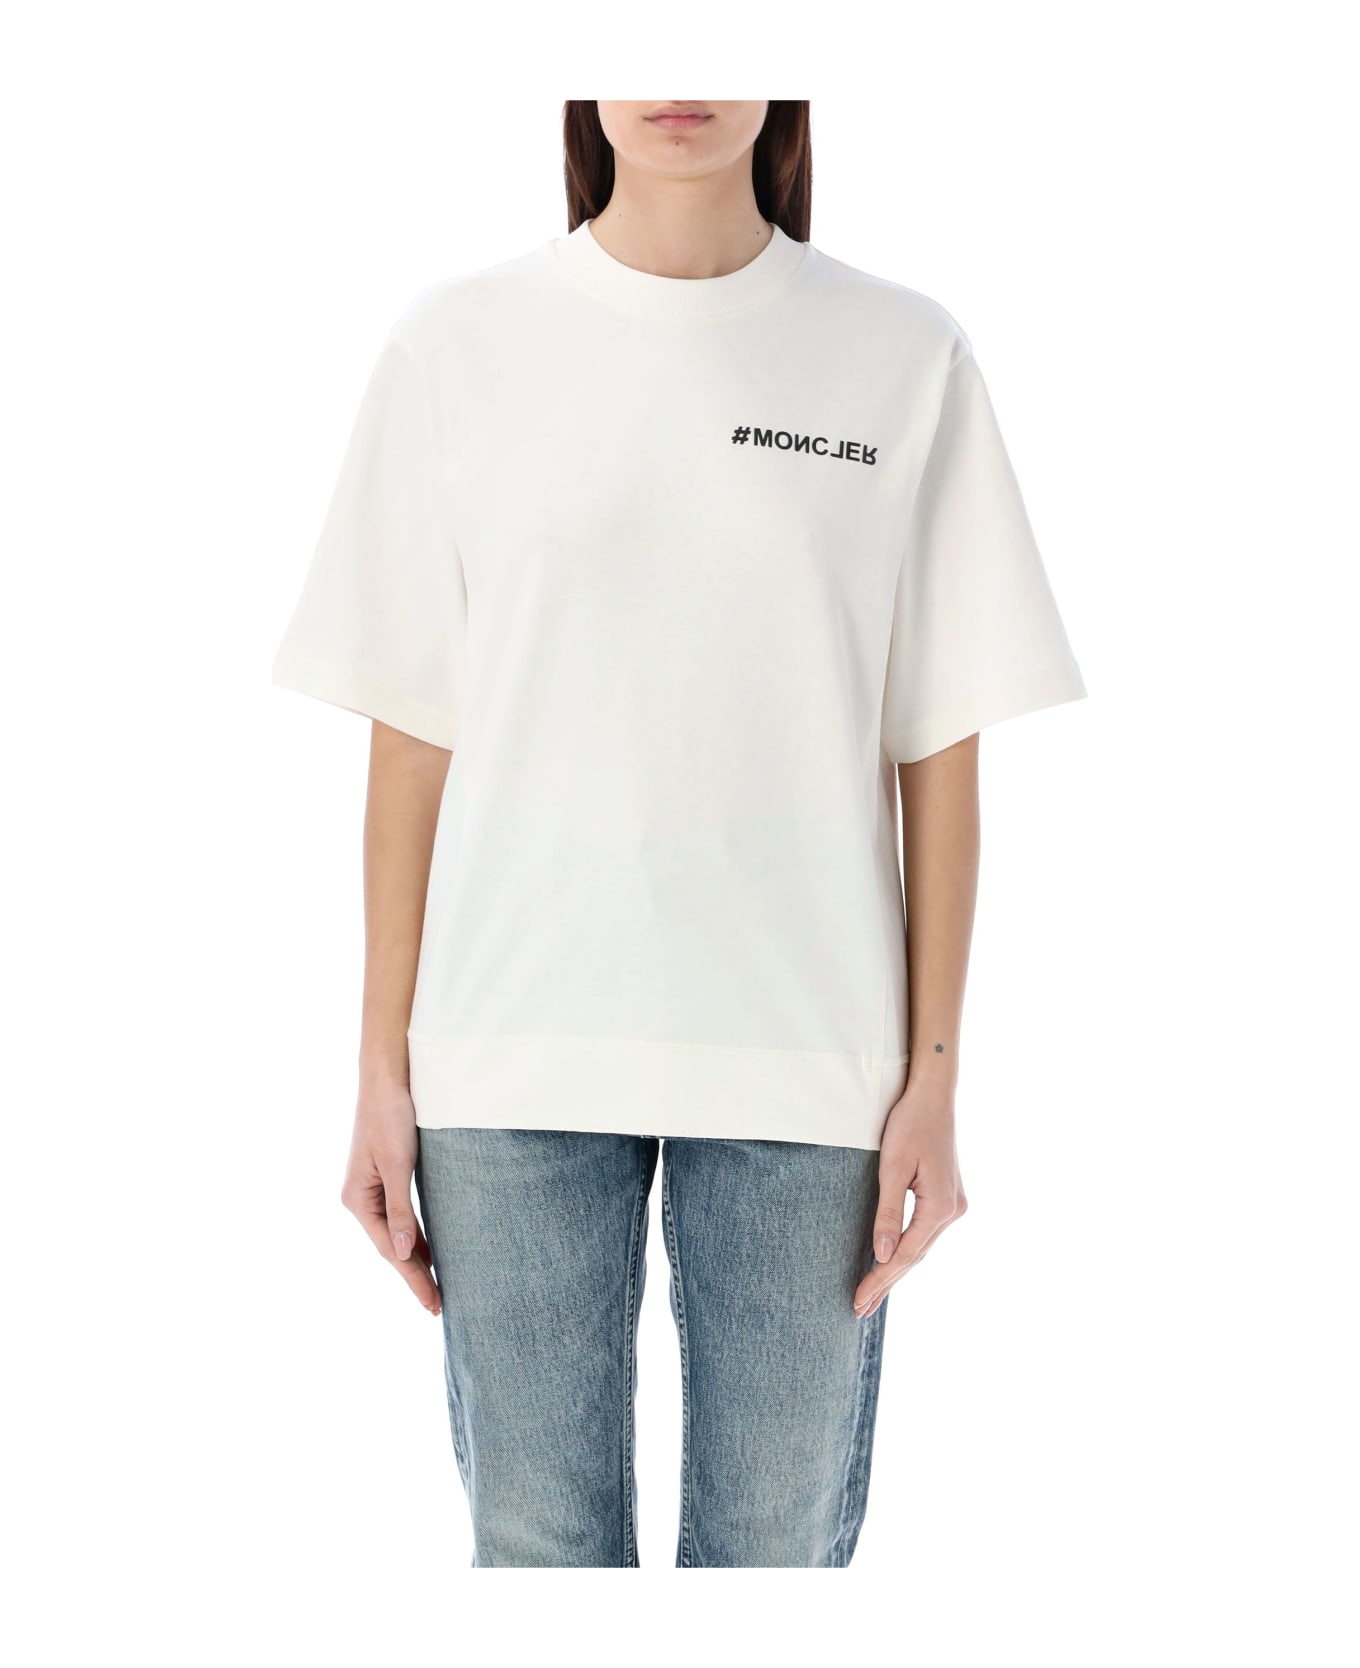 Moncler Grenoble T-shirt Tmm - WHITE